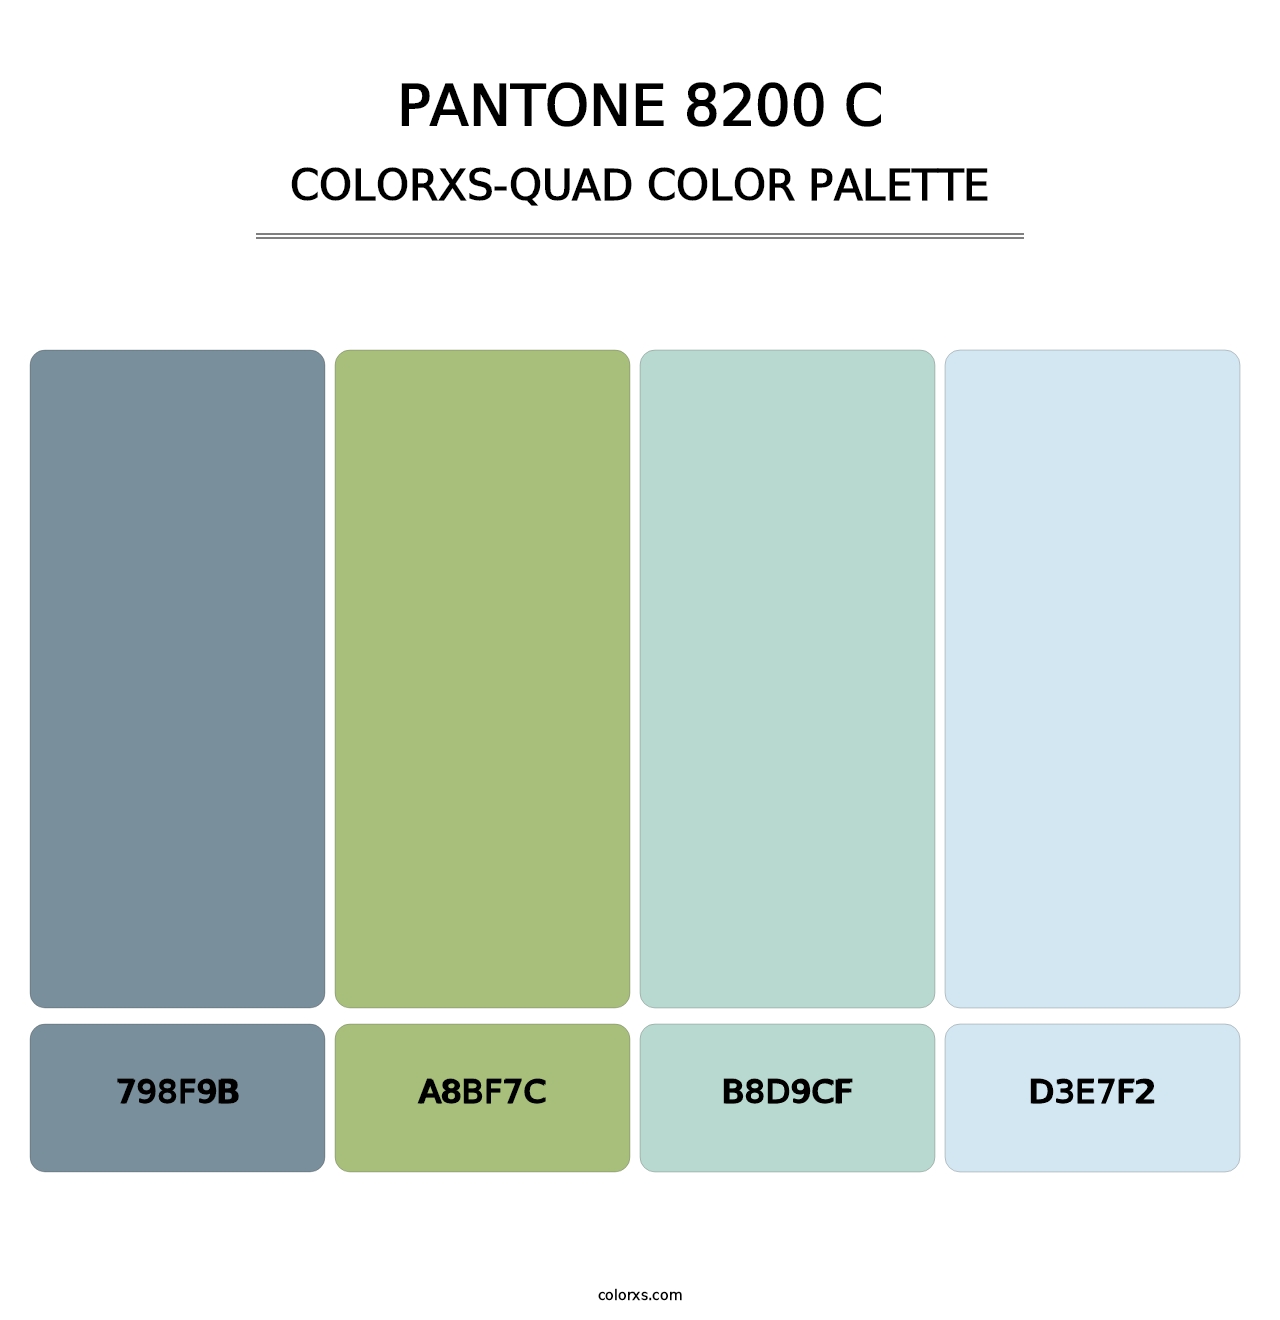 PANTONE 8200 C - Colorxs Quad Palette